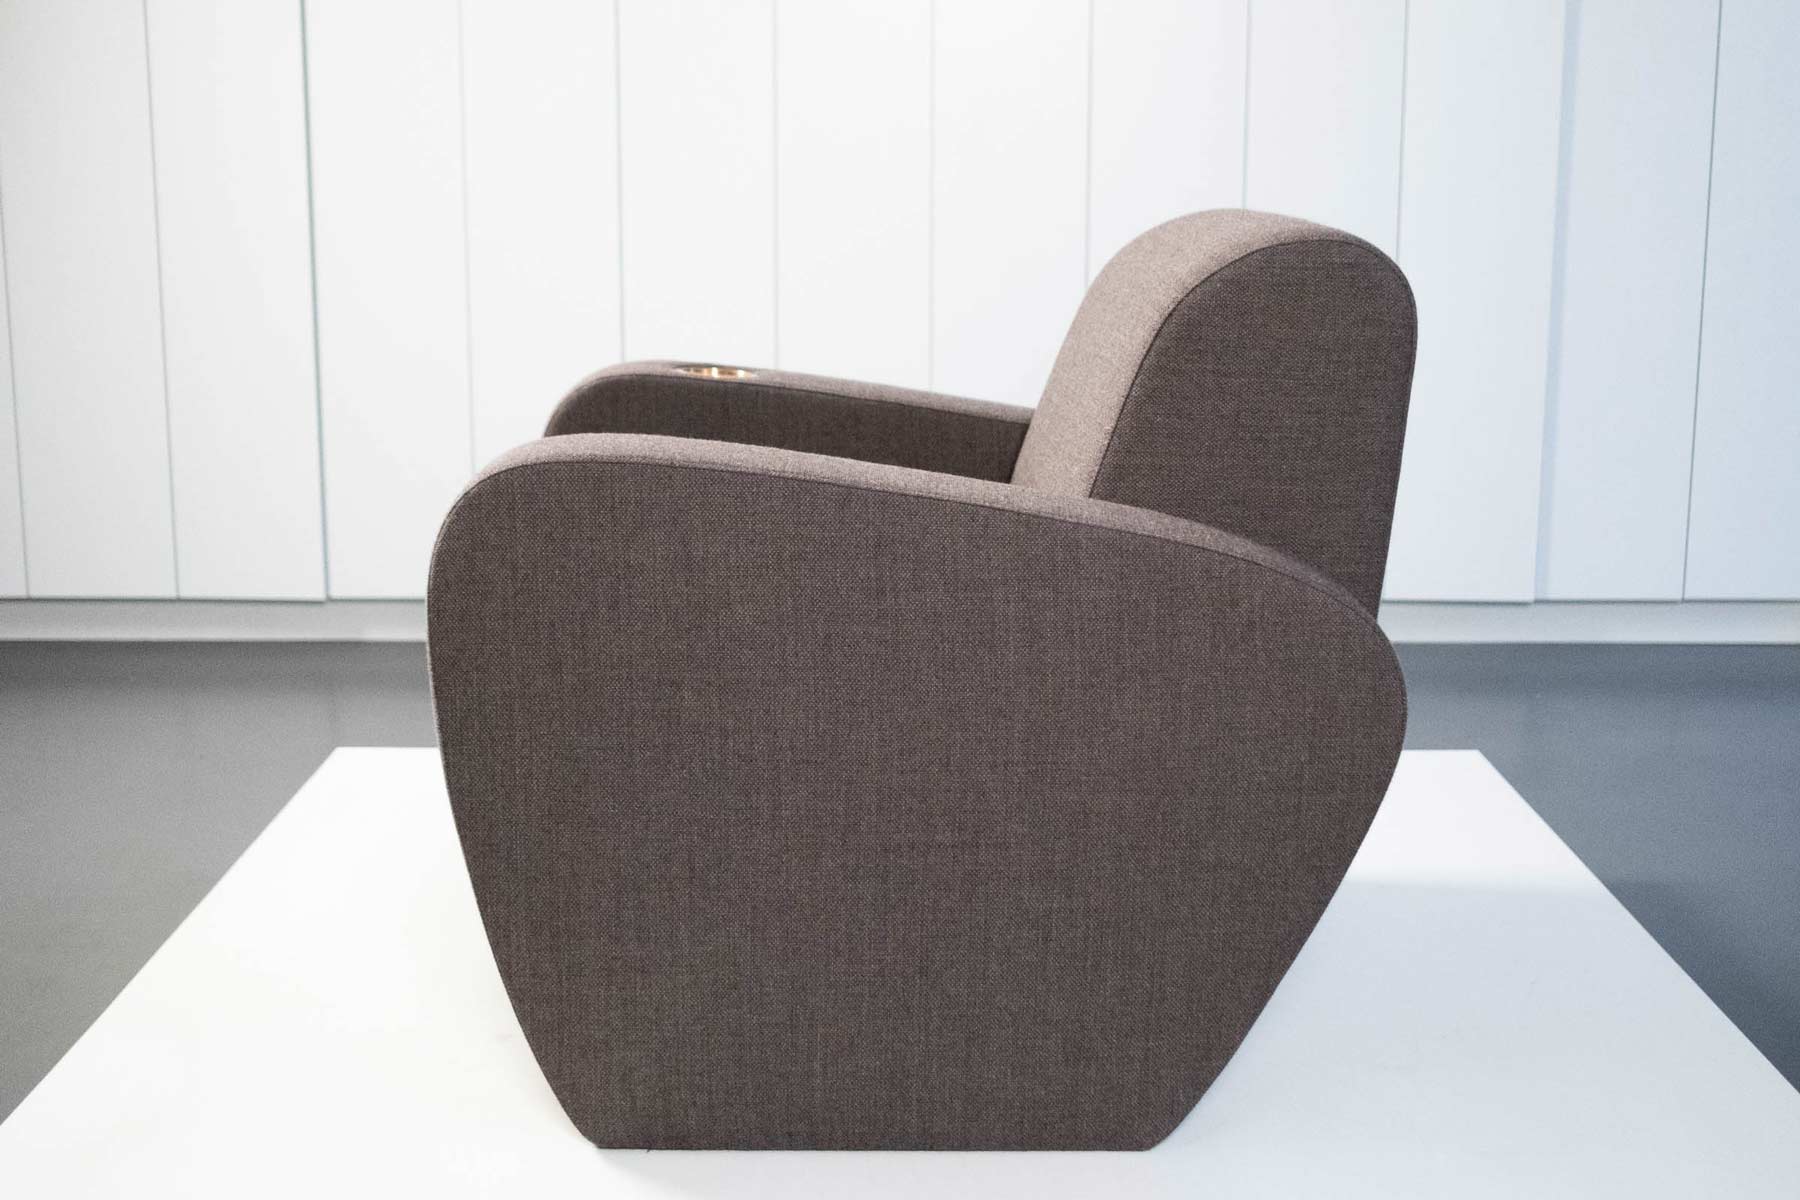 Cinema Chair Design by Ahocdrei Berlin Design Studio